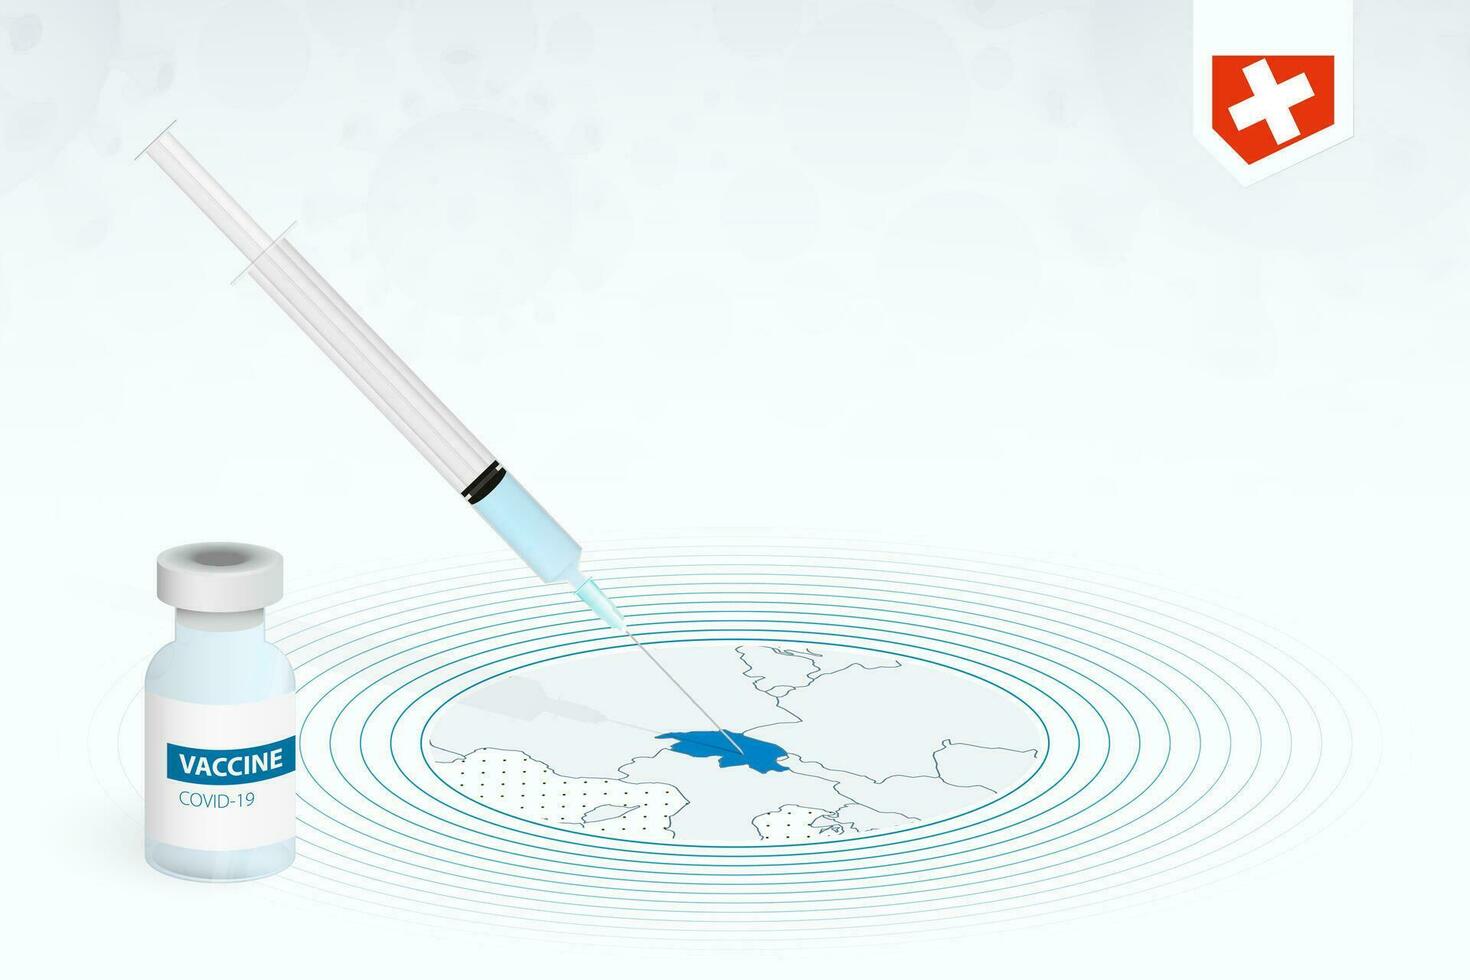 covid-19 vacinação dentro Suíça, coronavírus vacinação ilustração com vacina garrafa e seringa injeção dentro mapa do Suíça. vetor